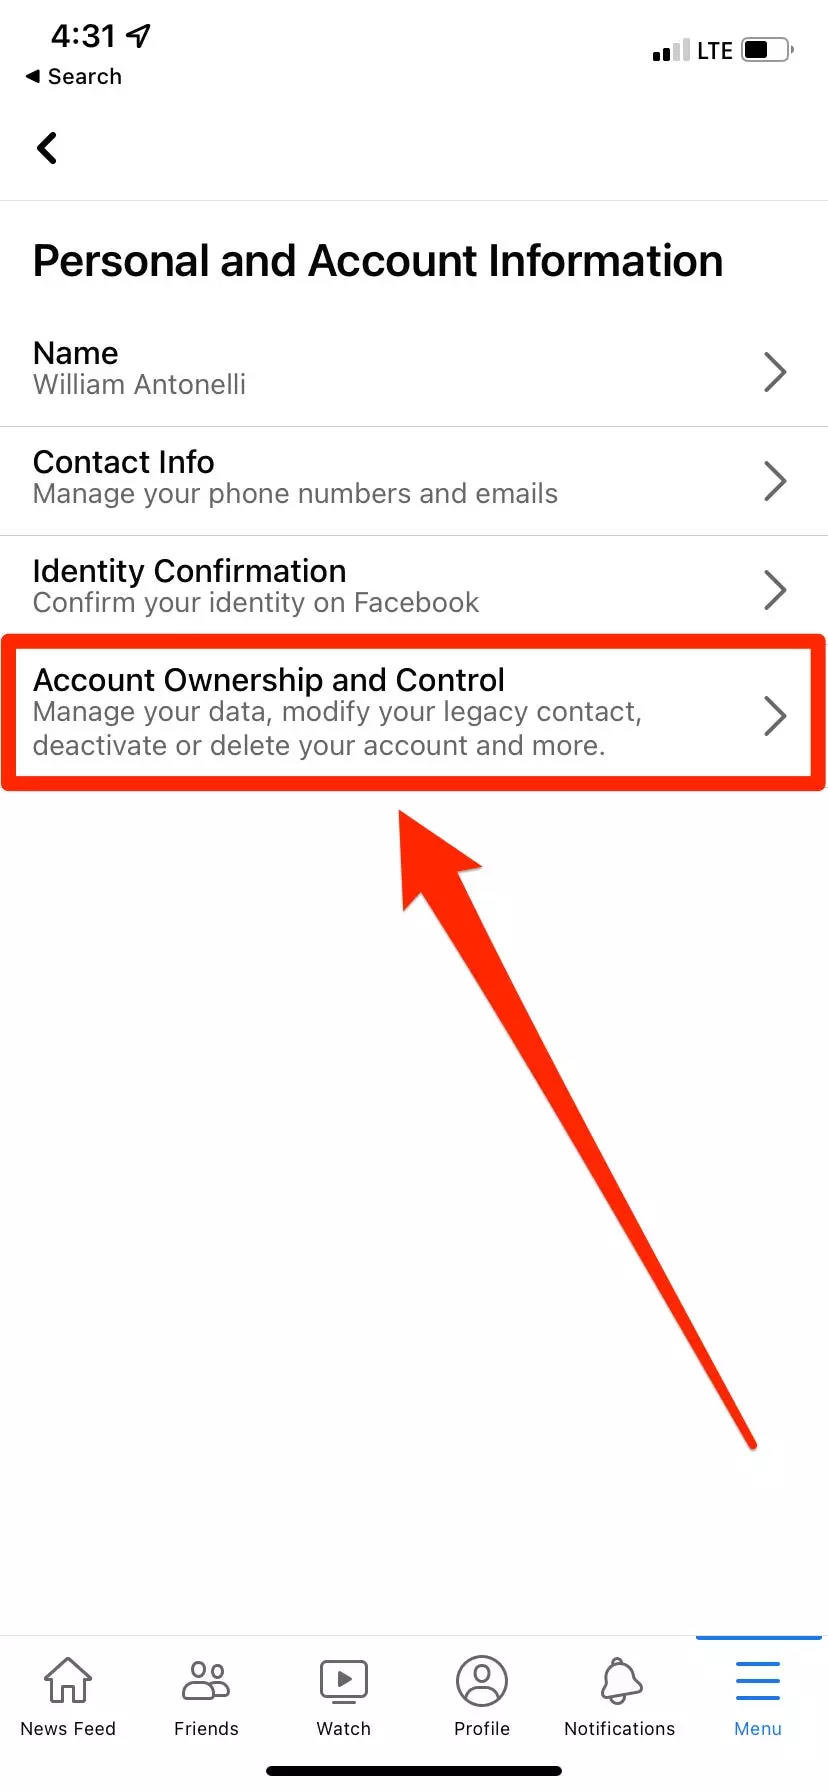 Как удалить свой аккаунт Facebook на компьютере или телефоне и сохранить все личные данные